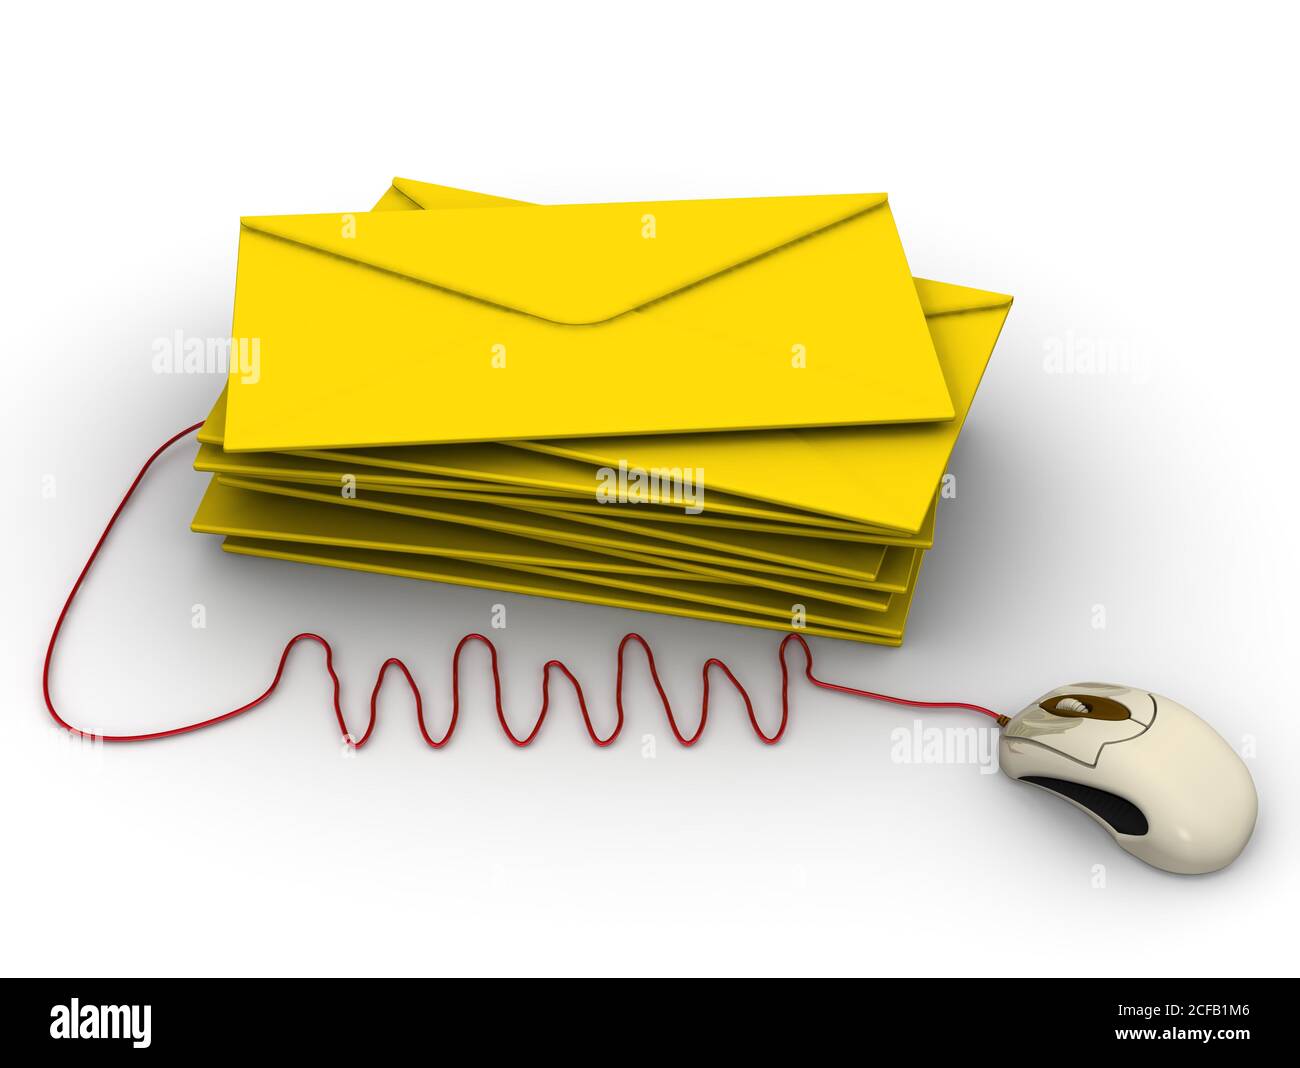 E-Mail. Stapel von gelben Umschlägen und WWW-Abkürzung an Computer-Maus auf weißem Hintergrund angeschlossen. 3D-Illustration Stockfoto